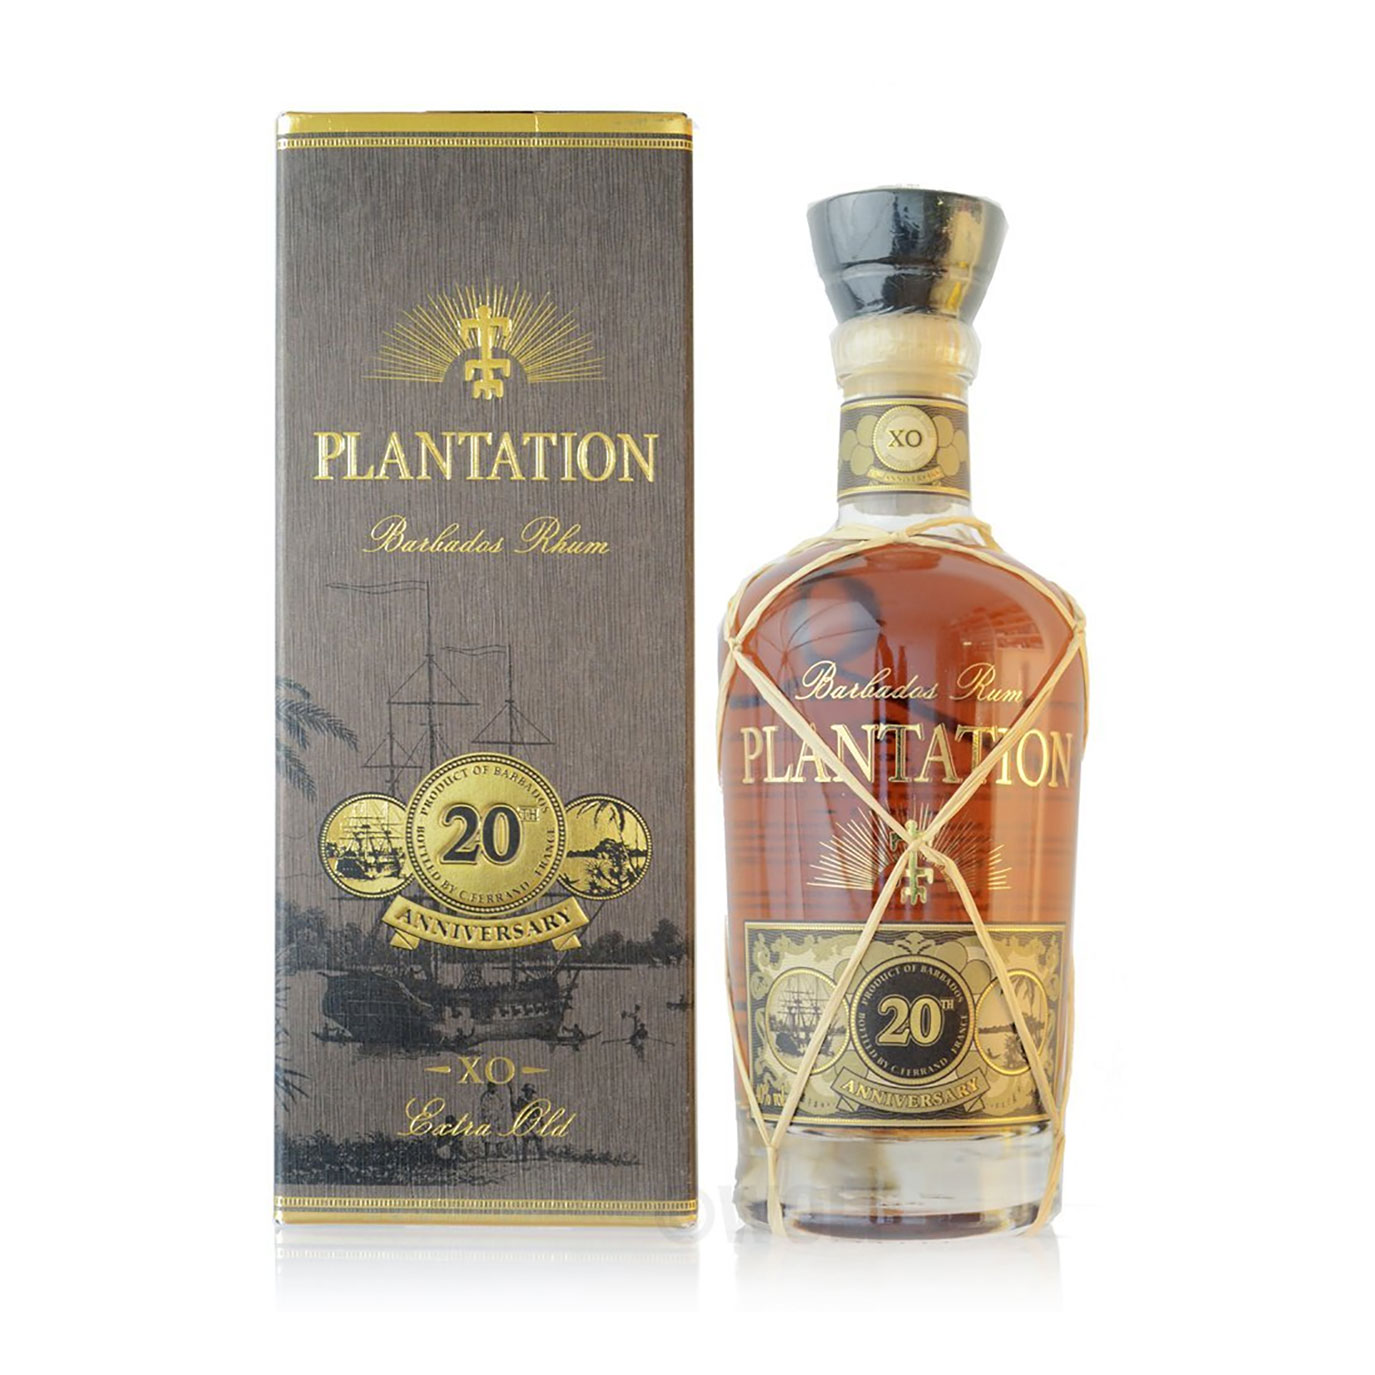 Trauminsel Plantation der years Old Barbados Extra Barbados 20 Rum von